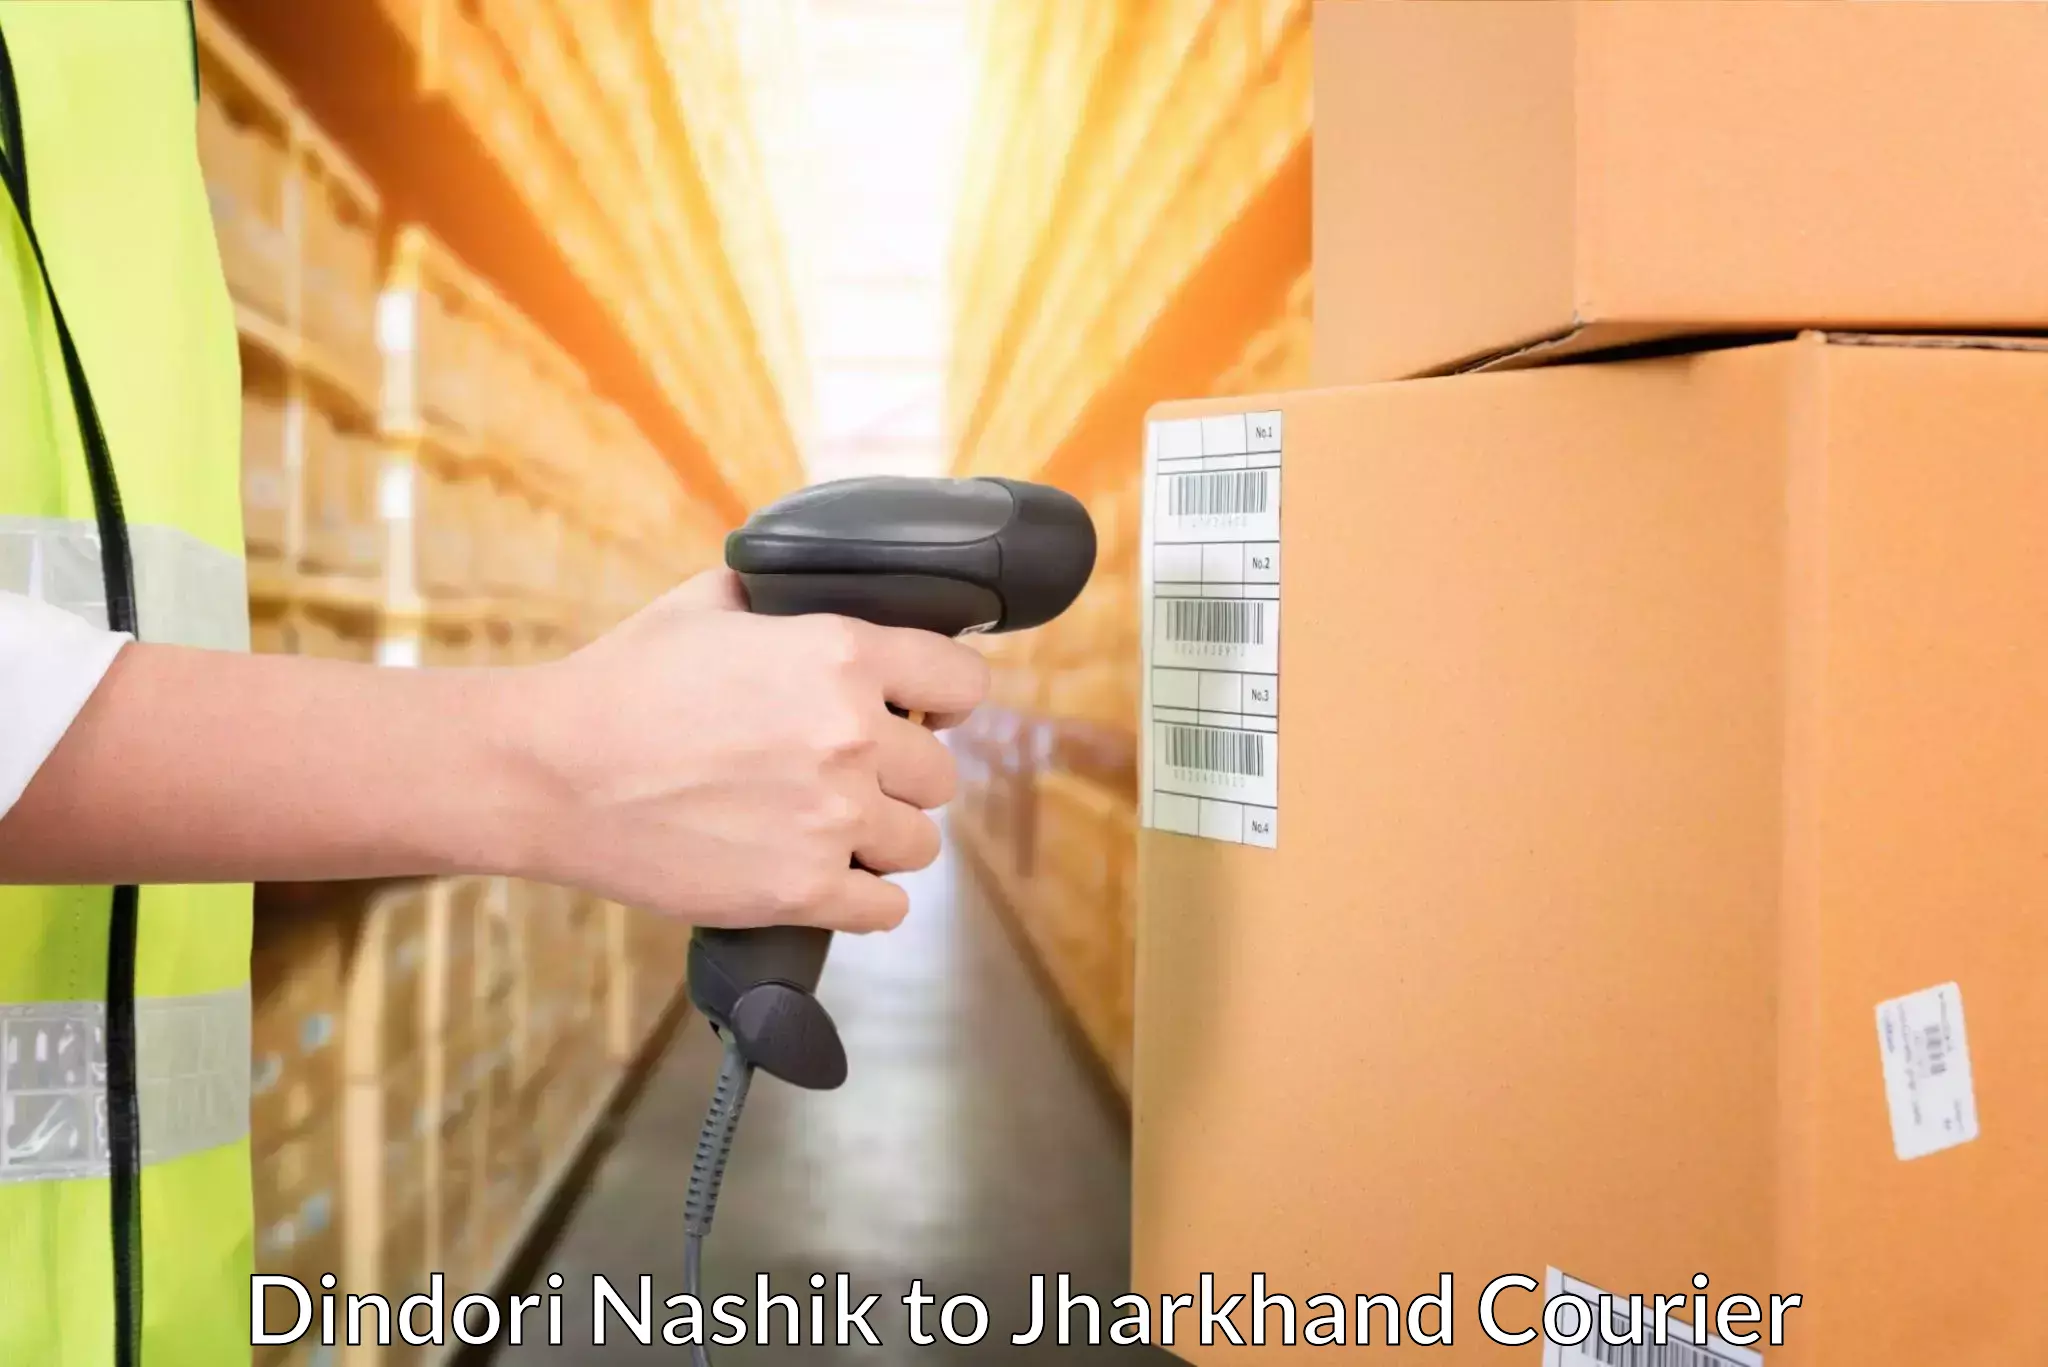 Comprehensive shipping services Dindori Nashik to Lohardaga